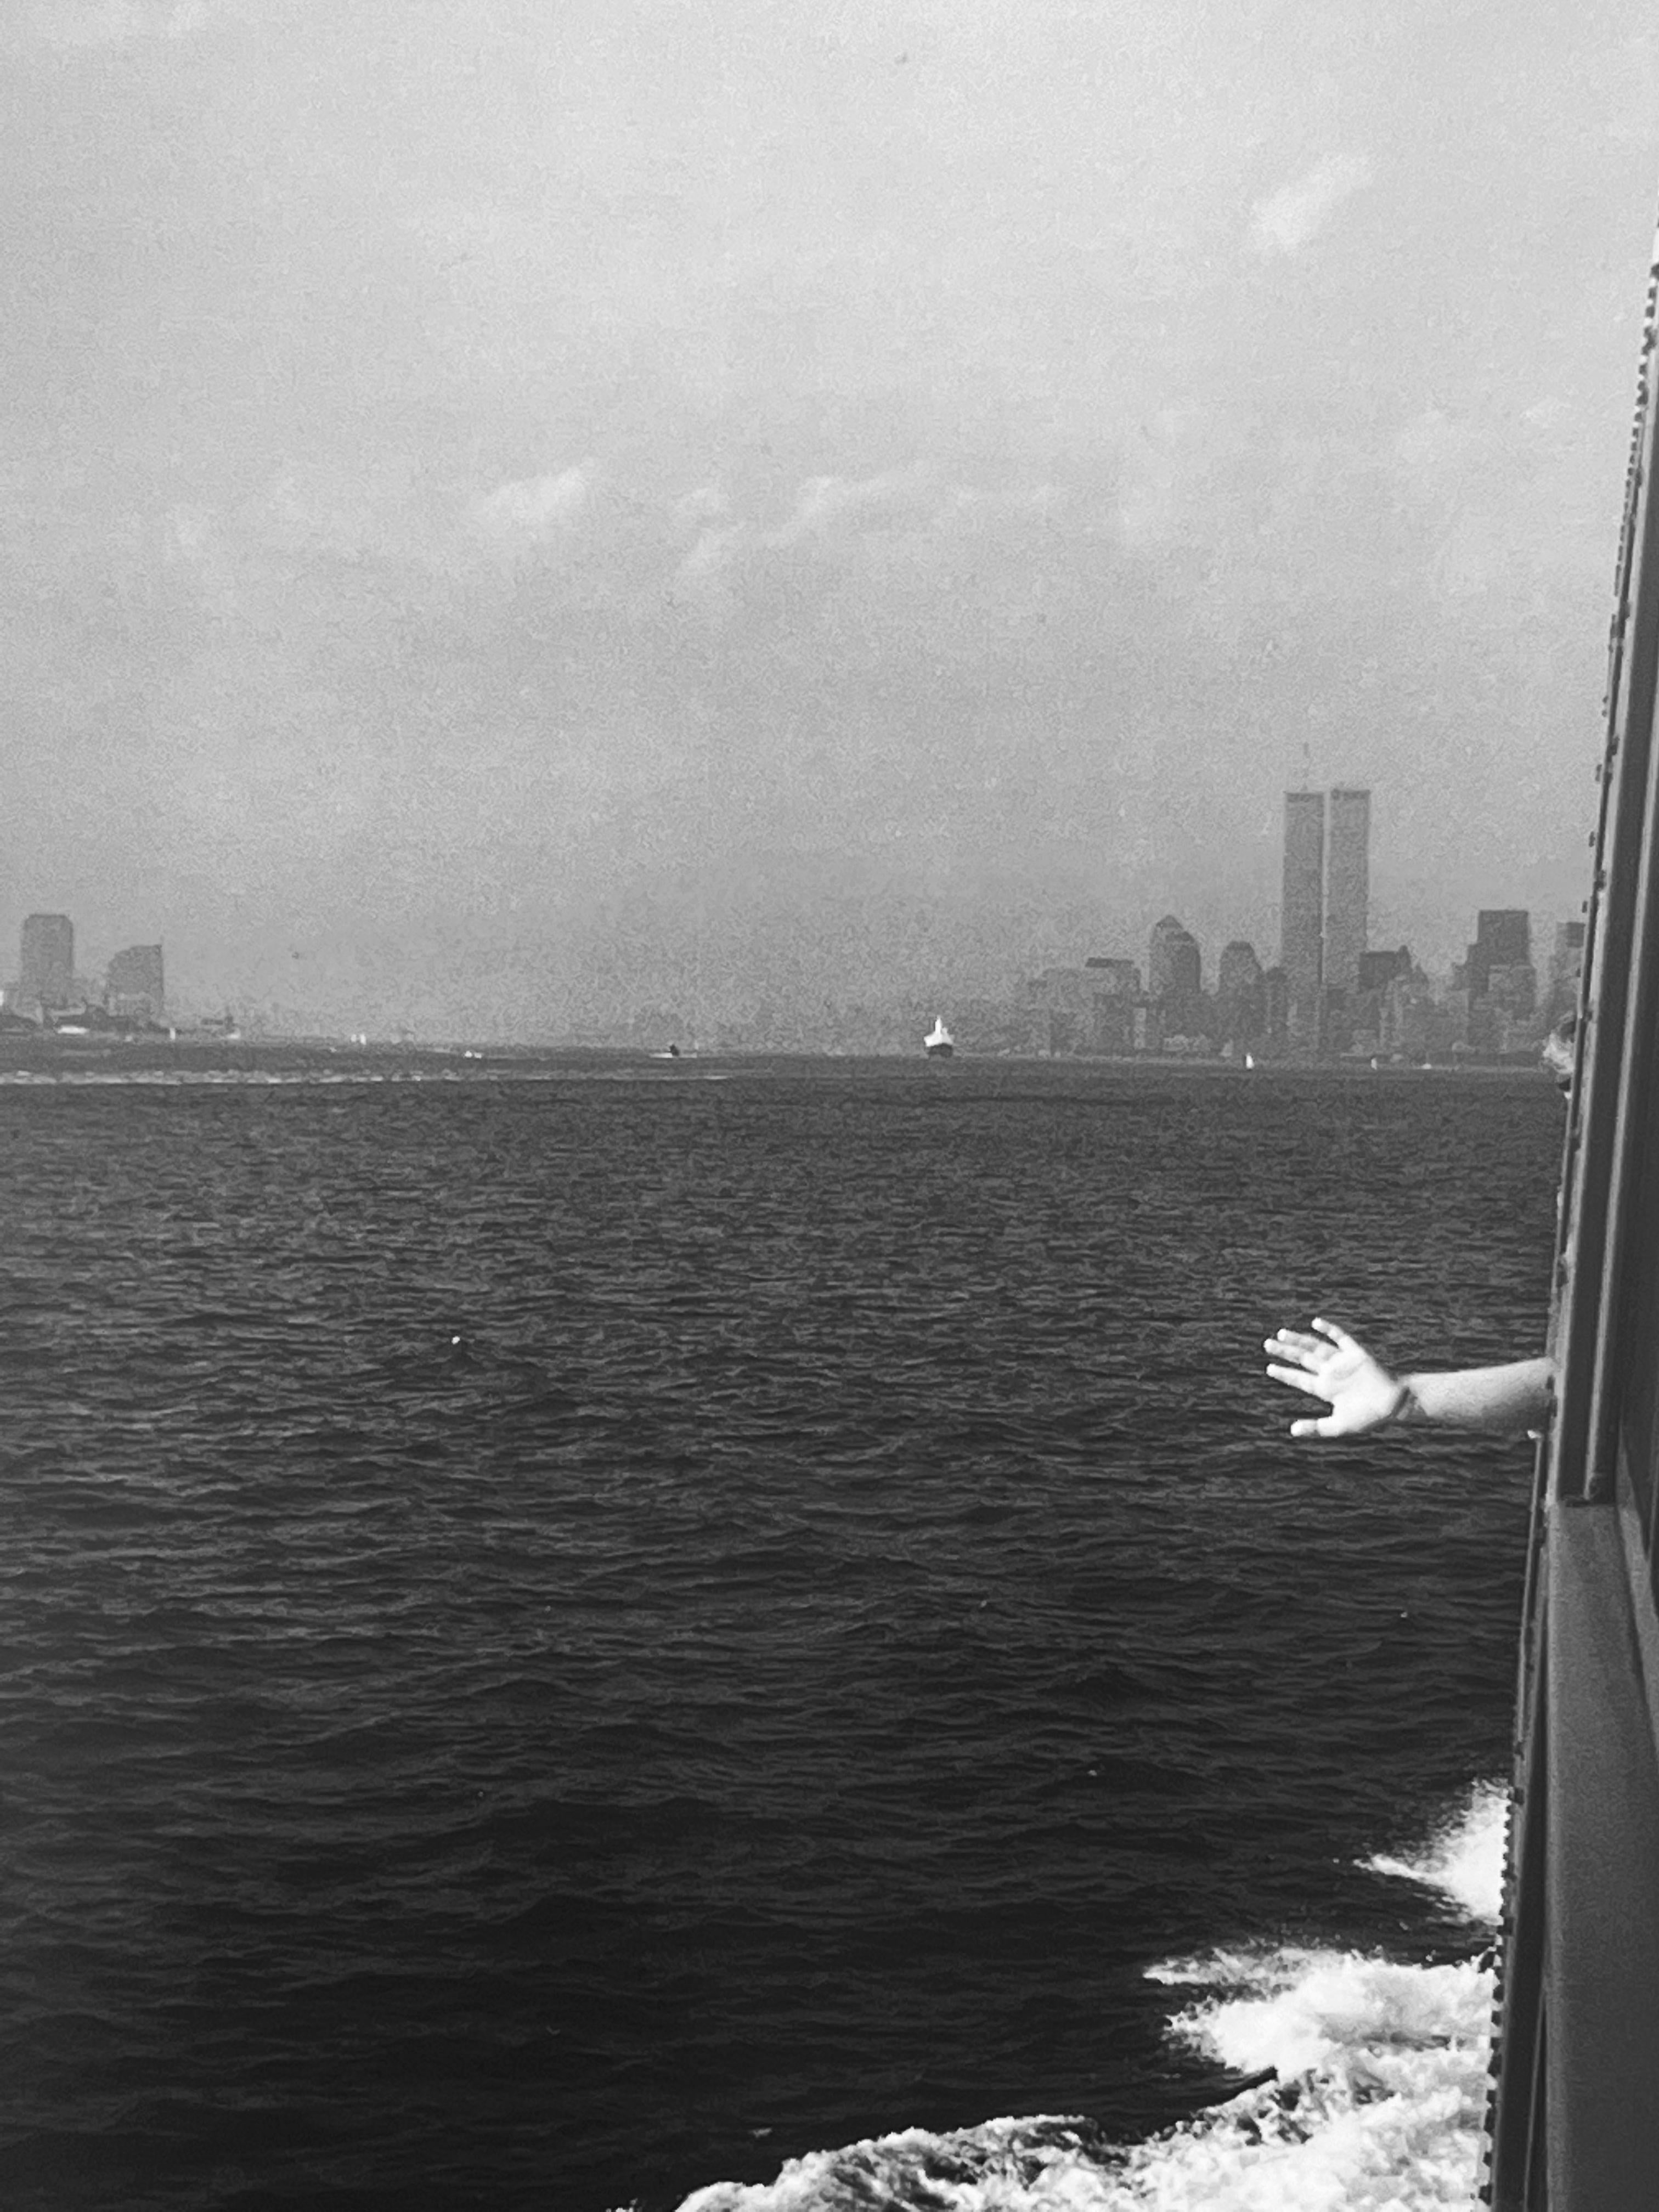 Goodbye Wave Goodbye, Schwarz-Weiß-Fotografie aus der Staten Island Ferry, New York – Photograph von Roberta Fineberg